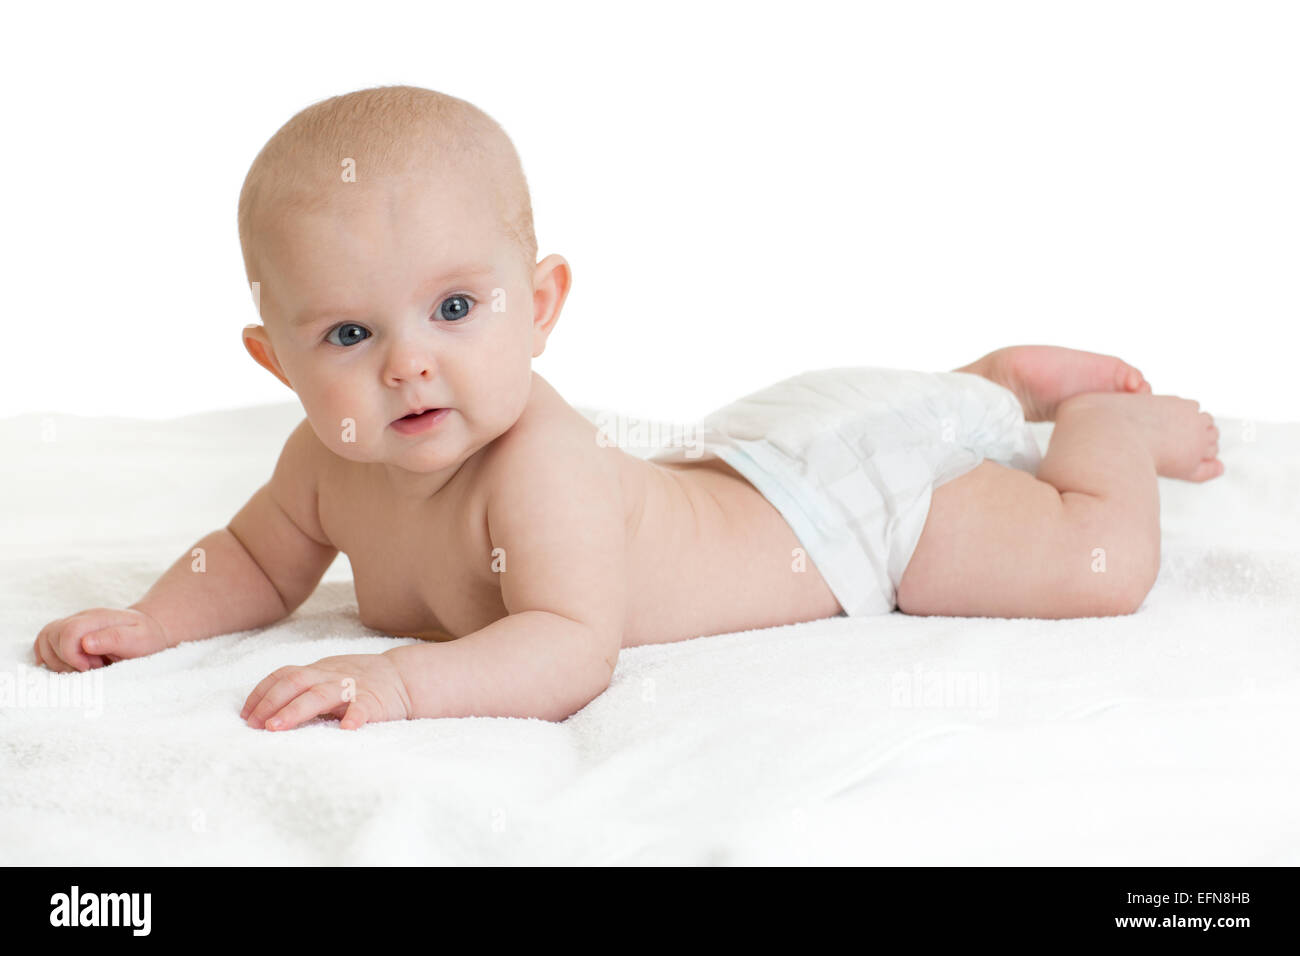 Carino il bambino giacente su asciugamano bianco nel pannolino o pannolino Foto Stock